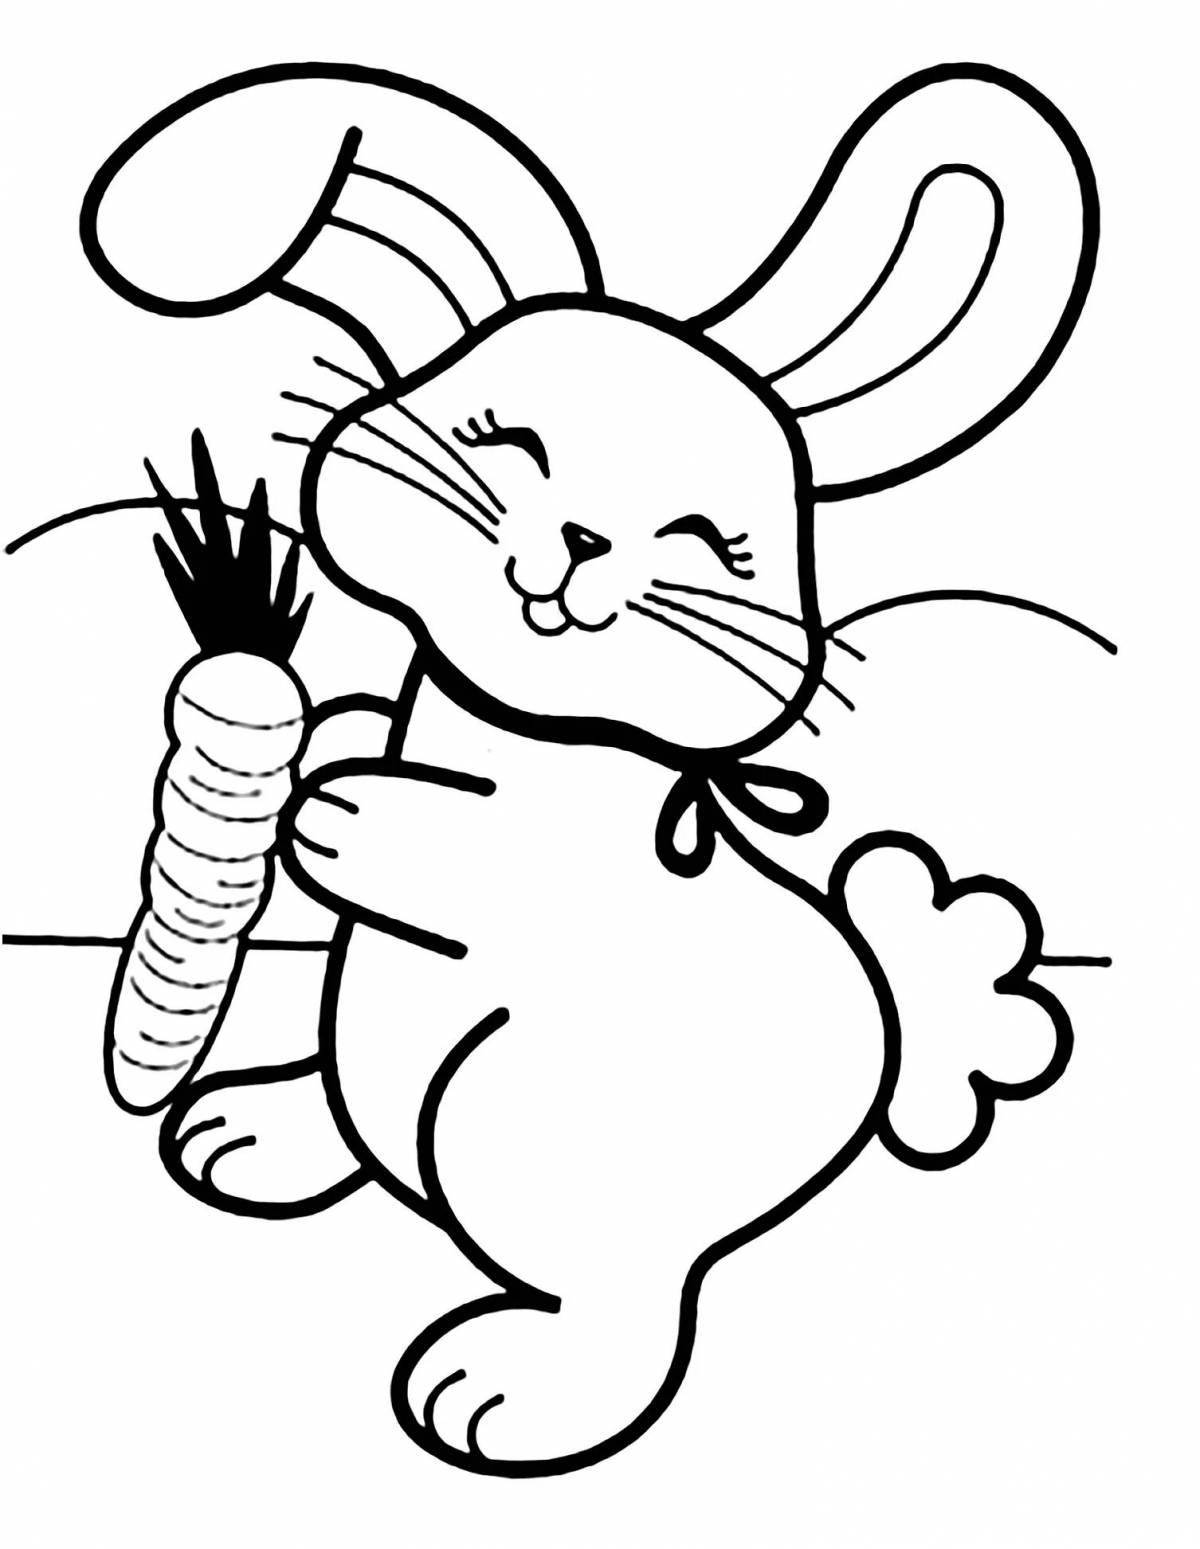 Увлекательная раскраска «год кролика» для детей